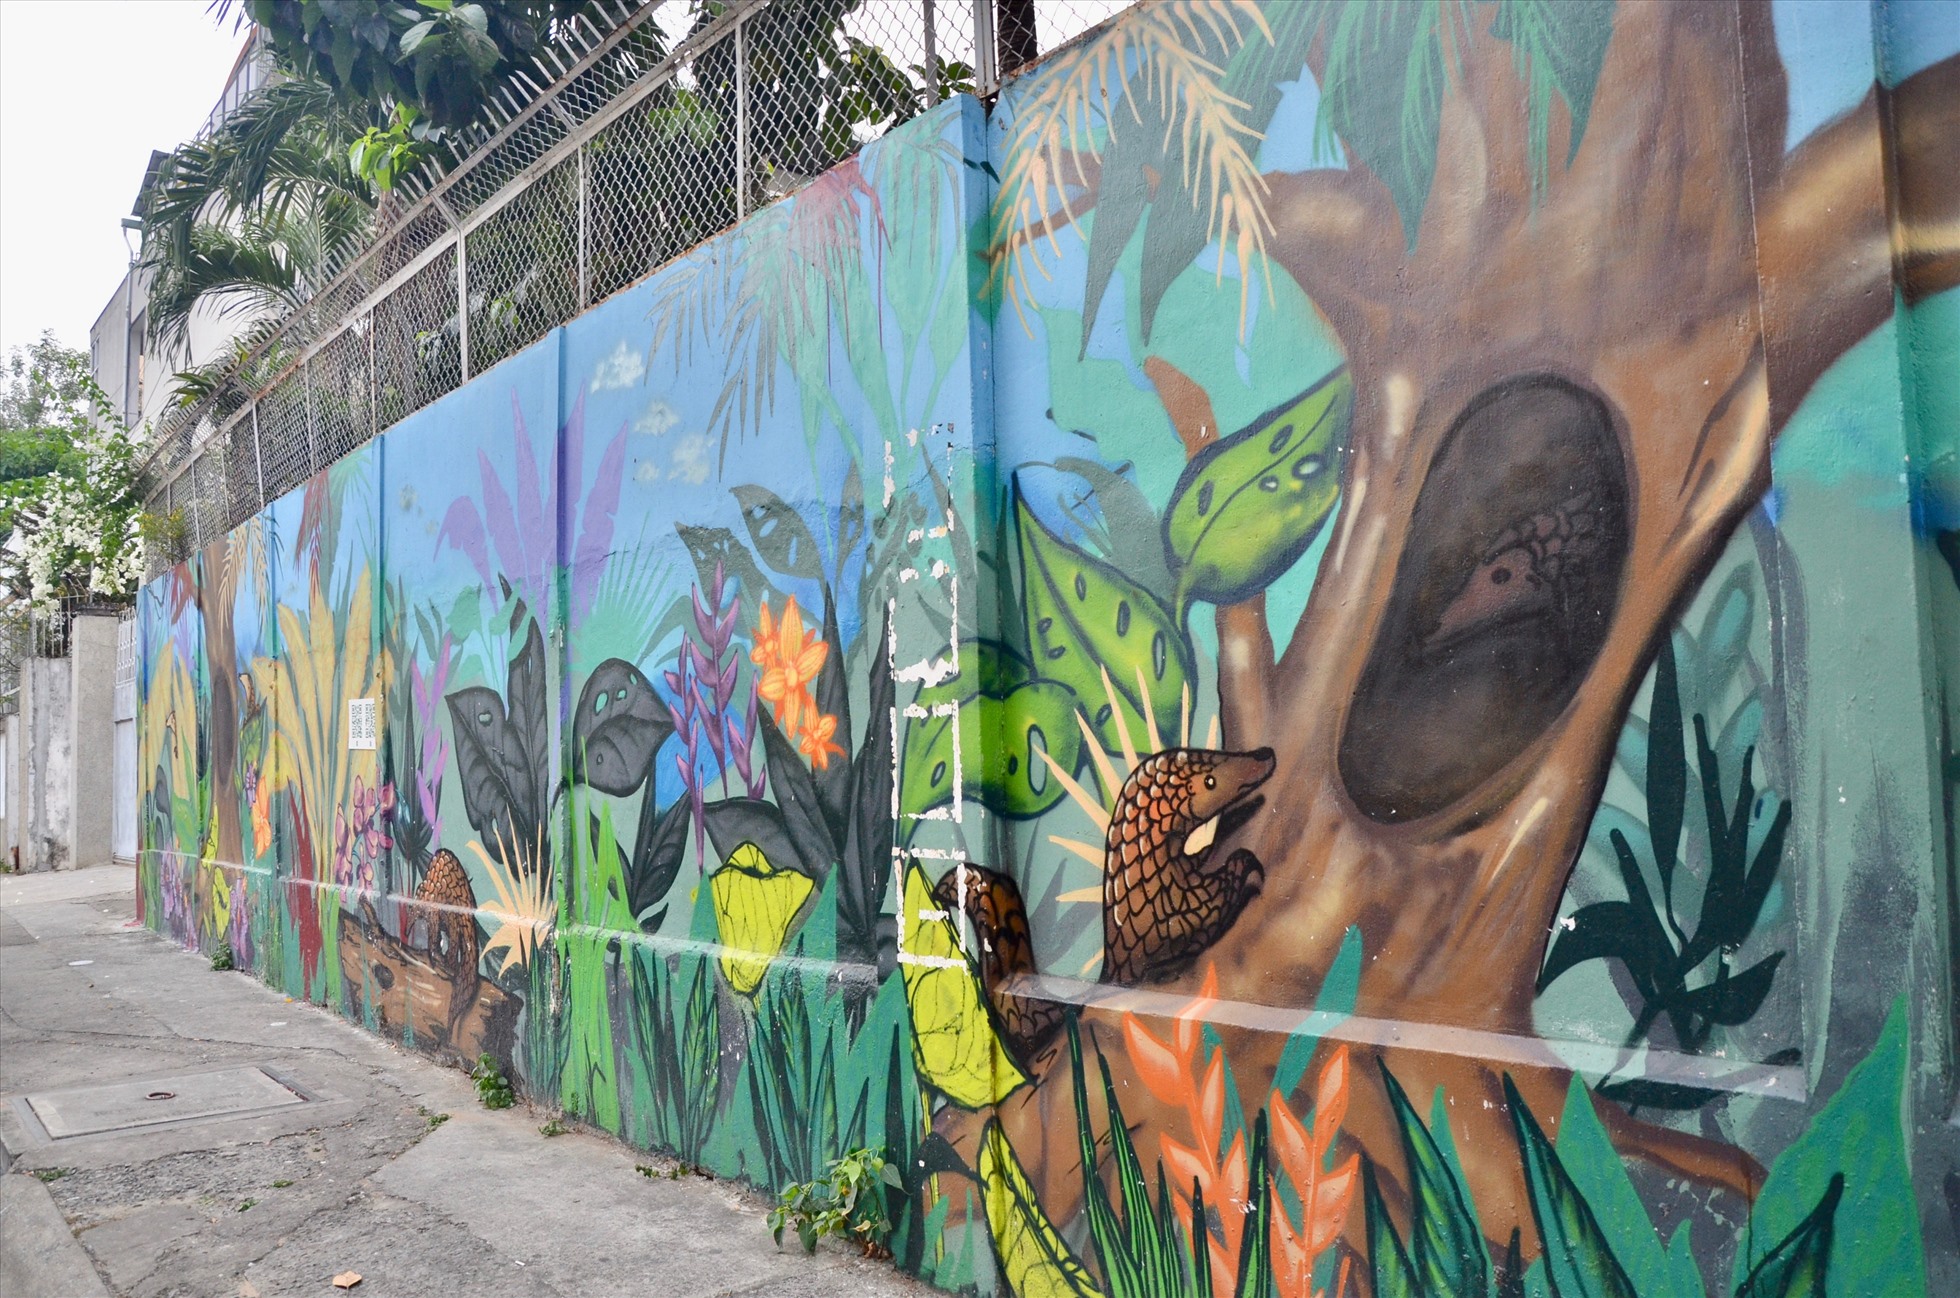 bức tranh trên đường Mai Thị Lựu được vẽ có chiều dài khoảng 20m với loài động vật chủ đạo là tê tê